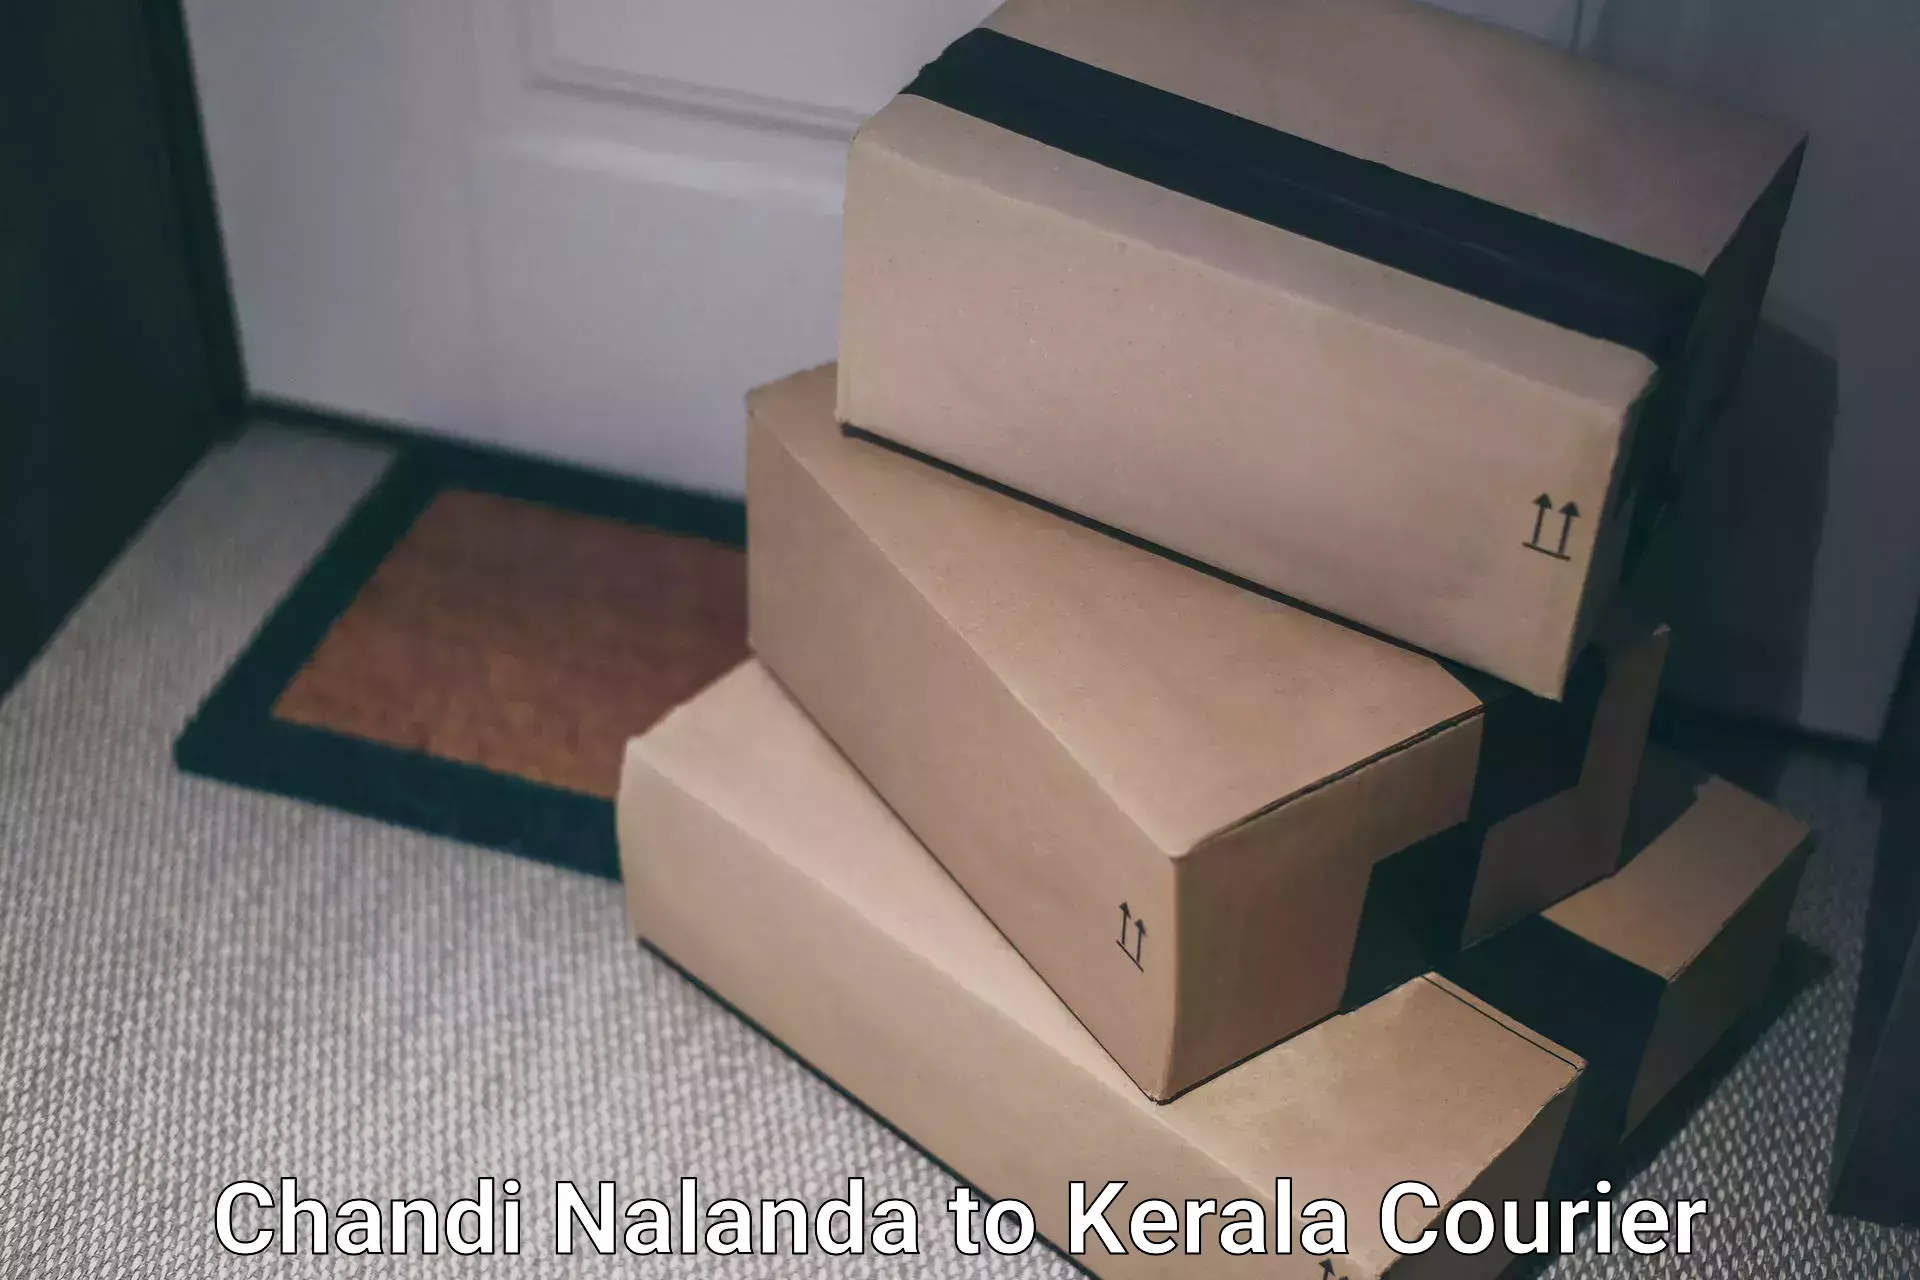 24/7 shipping services Chandi Nalanda to Angamaly